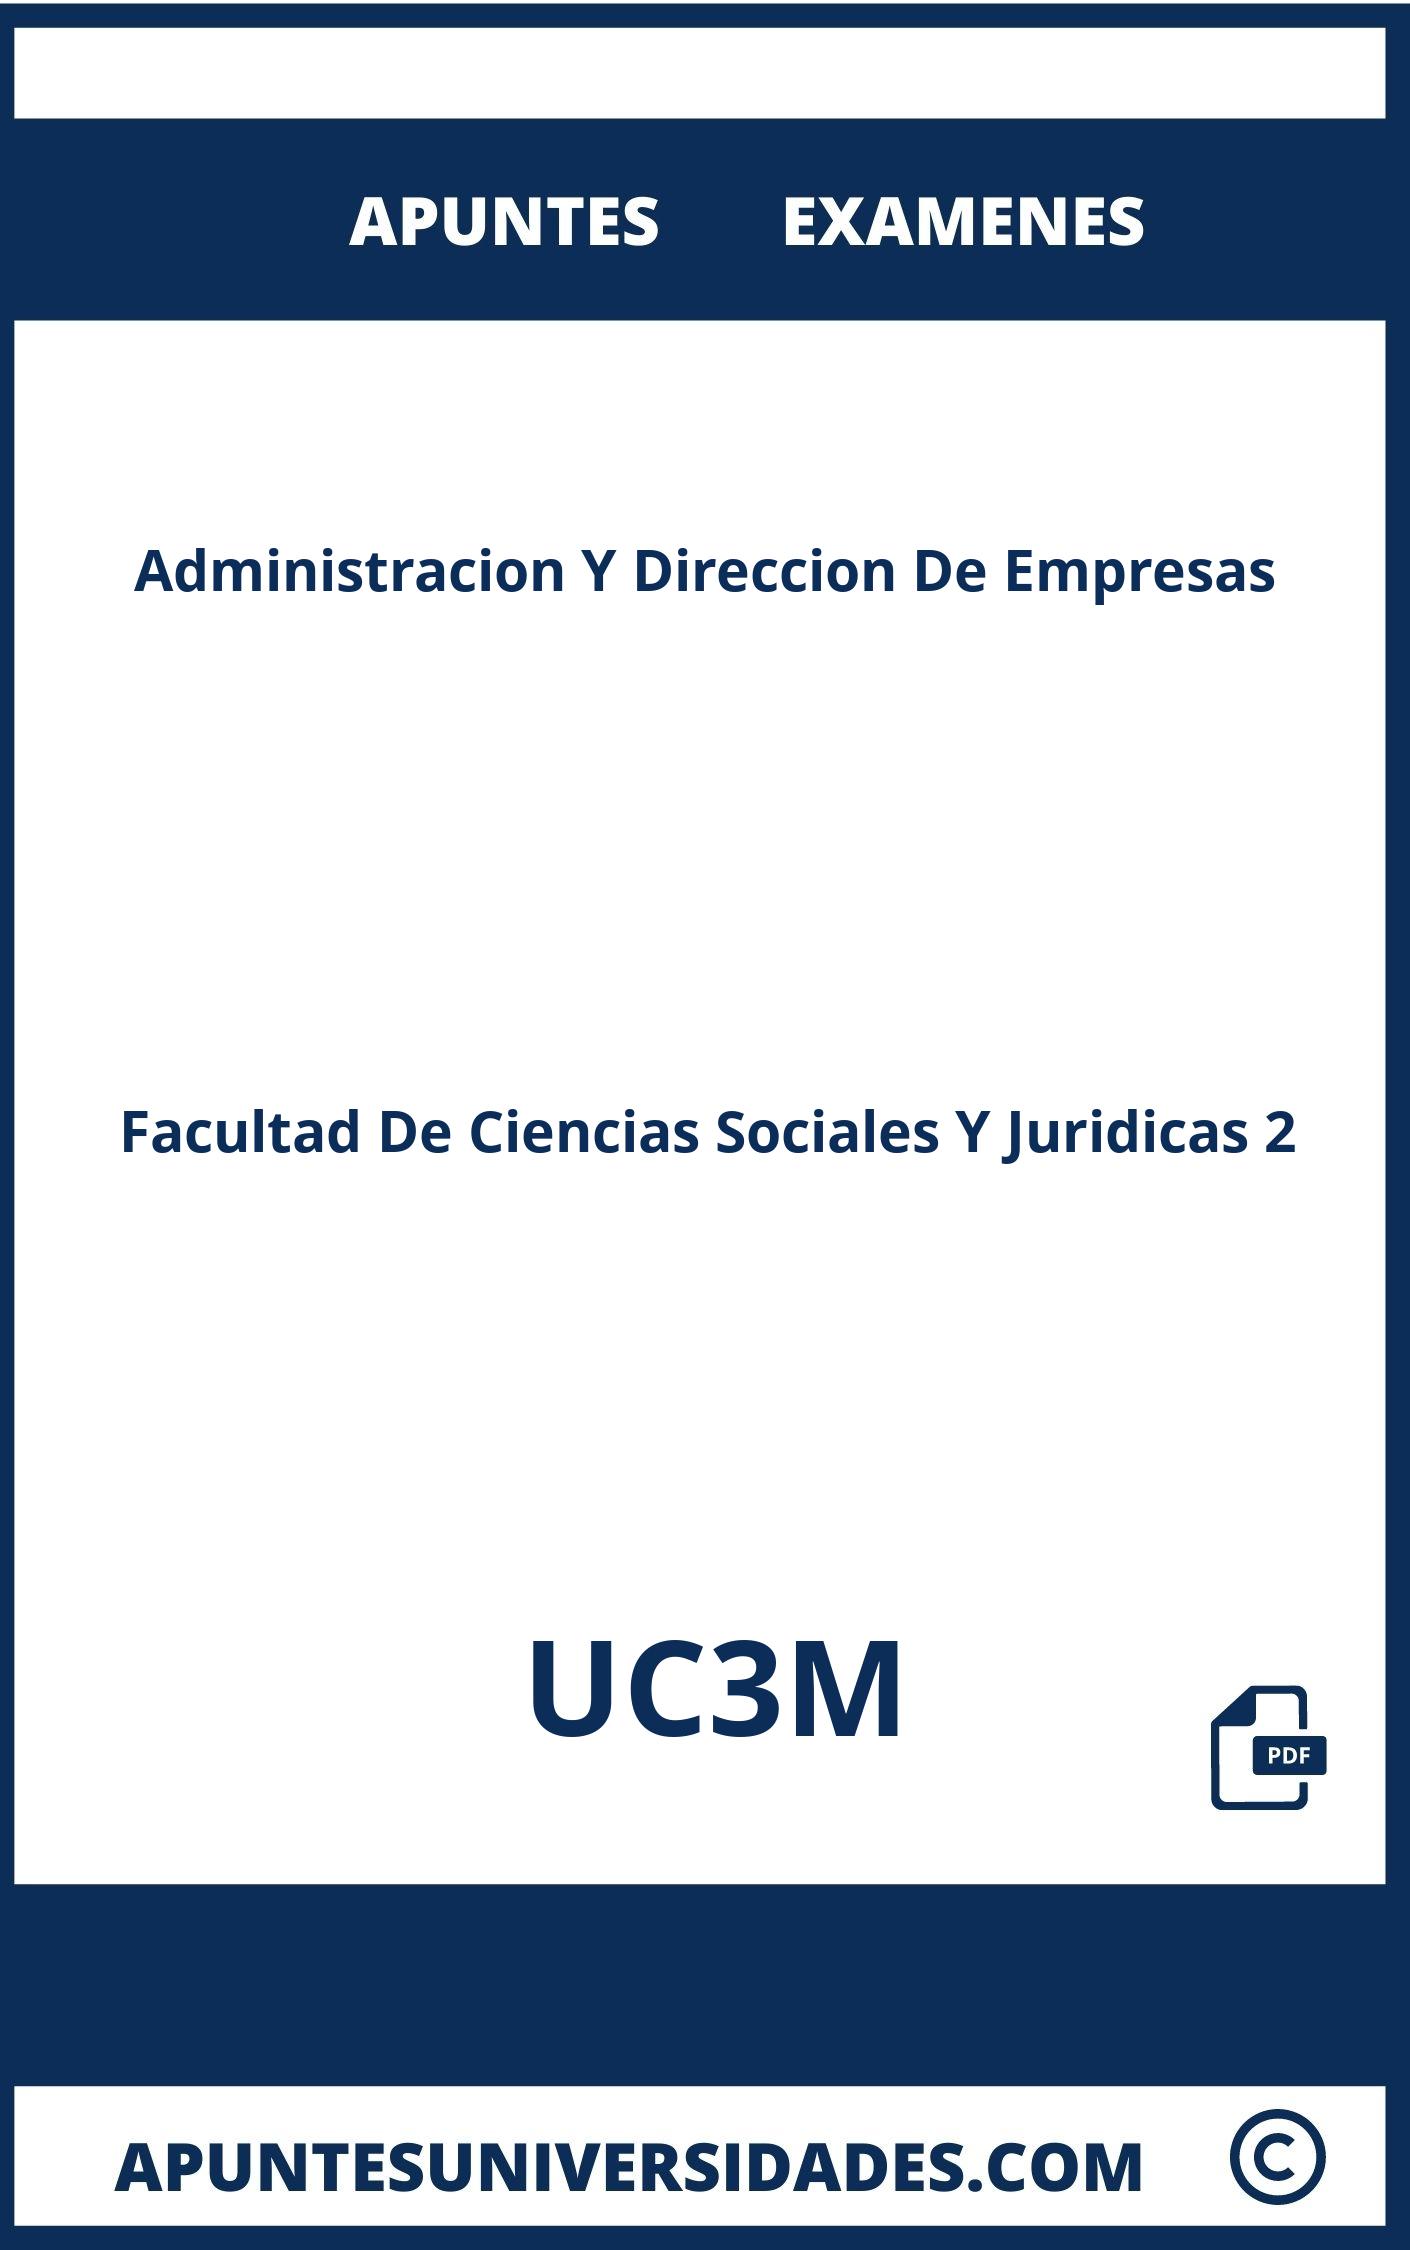 Apuntes Examenes Administracion Y Direccion De Empresas UC3M